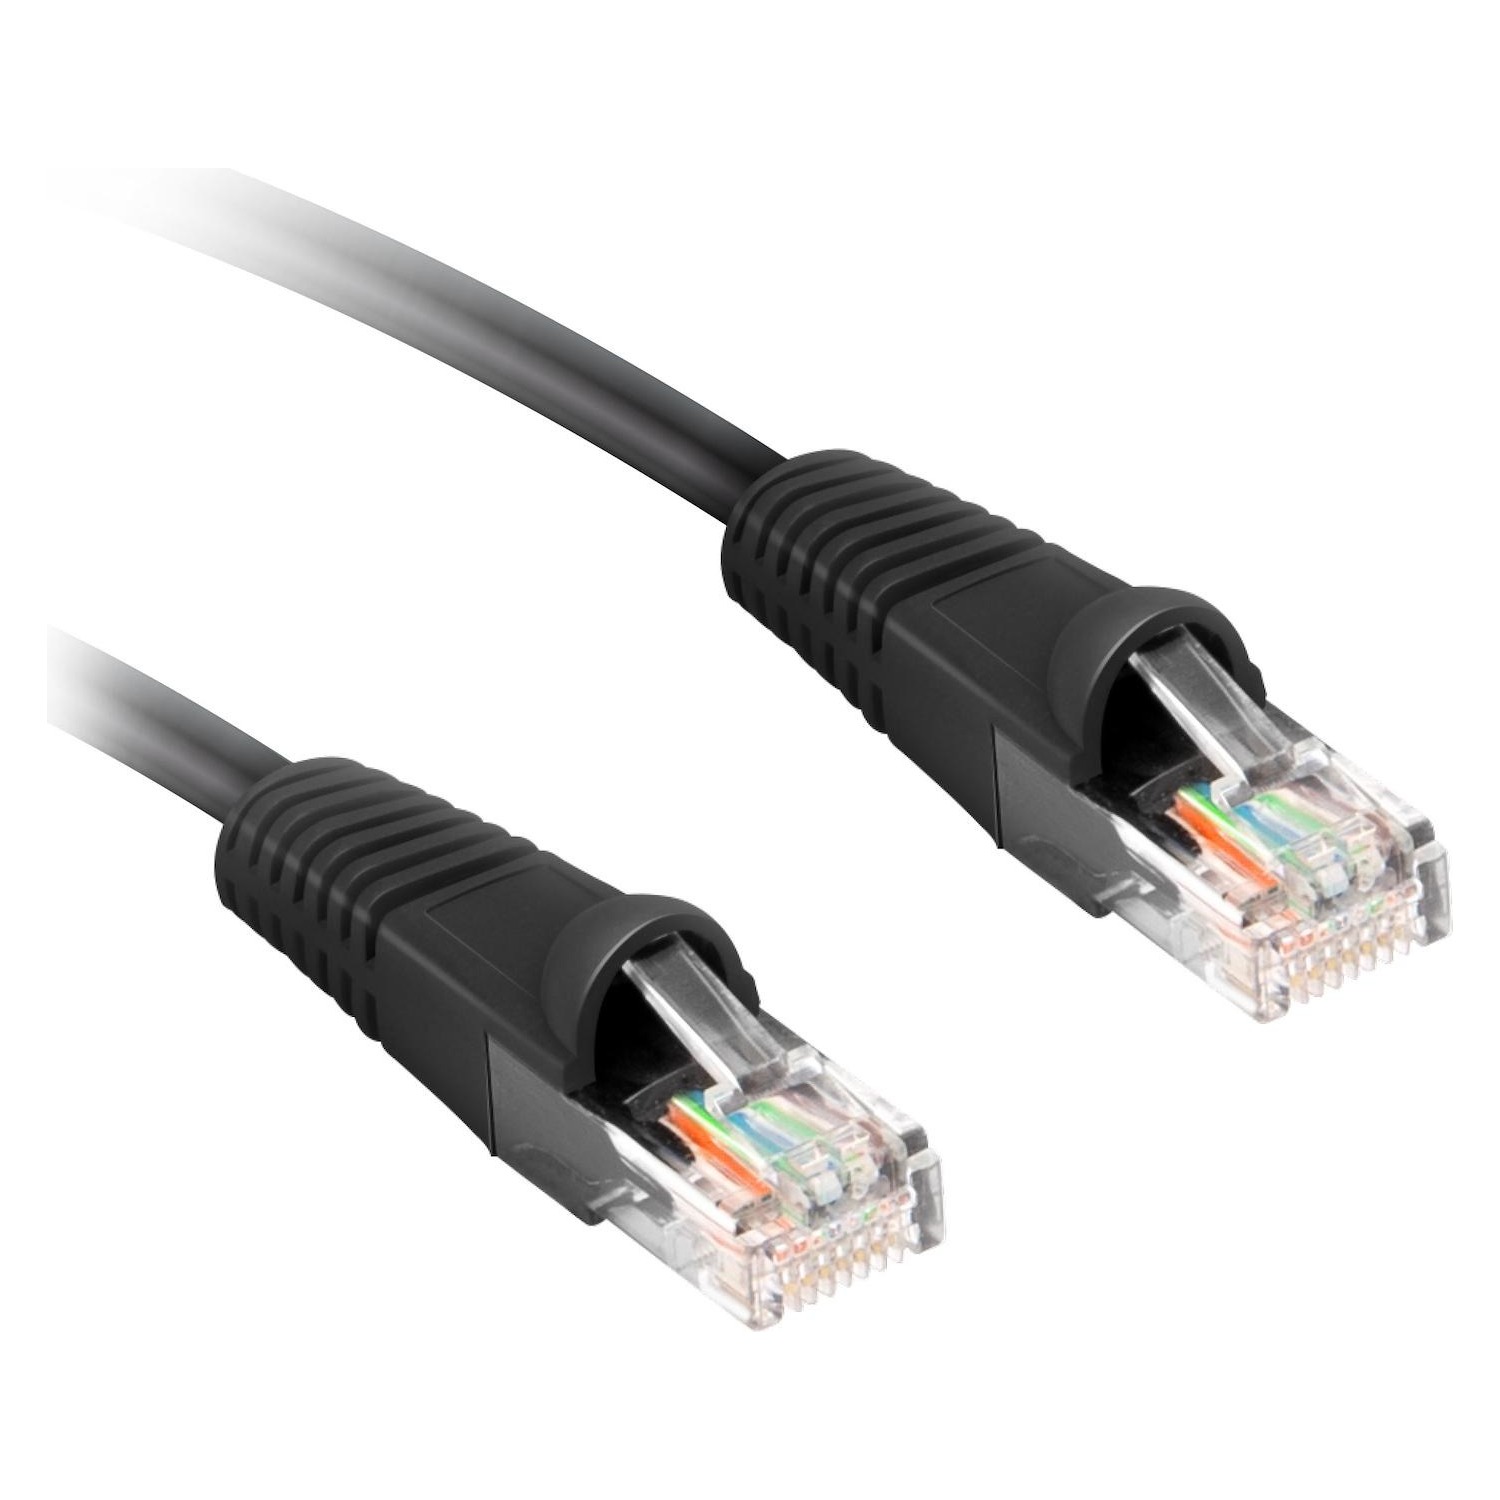 Immagine per Cavo di rete per PC Ekon UTP cat 5e colore grigio, connettori RJ45, lunghezza cavo 3 metri da DIMOStore